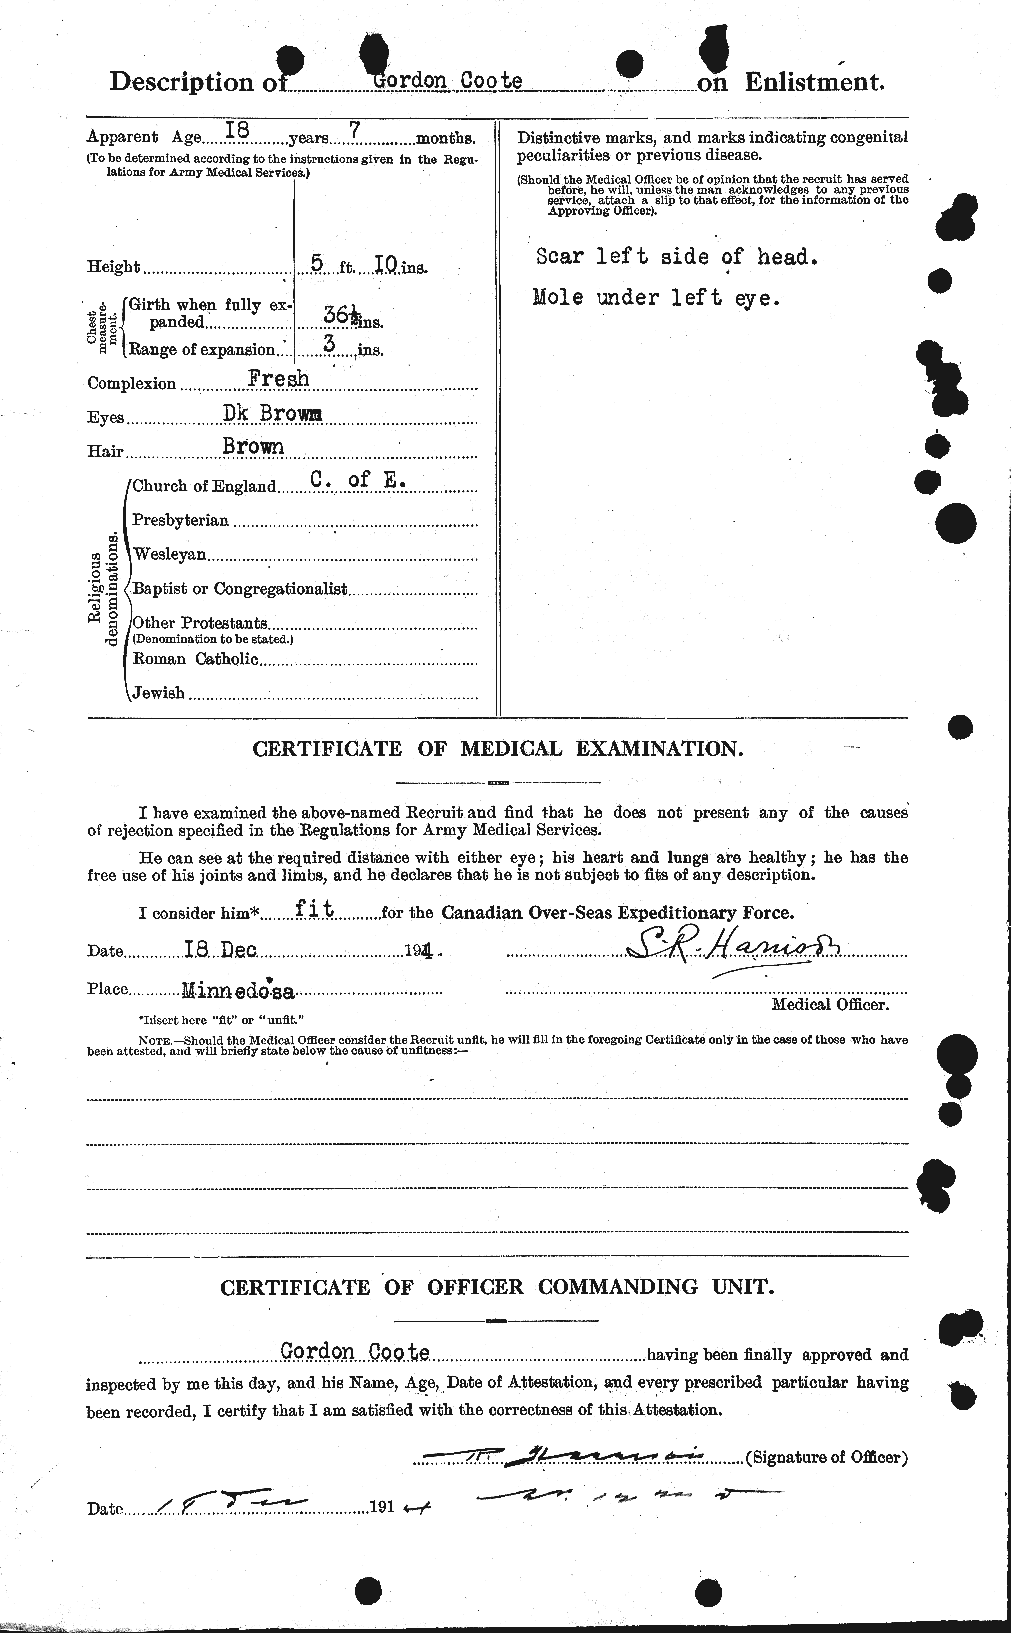 Dossiers du Personnel de la Première Guerre mondiale - CEC 057508b